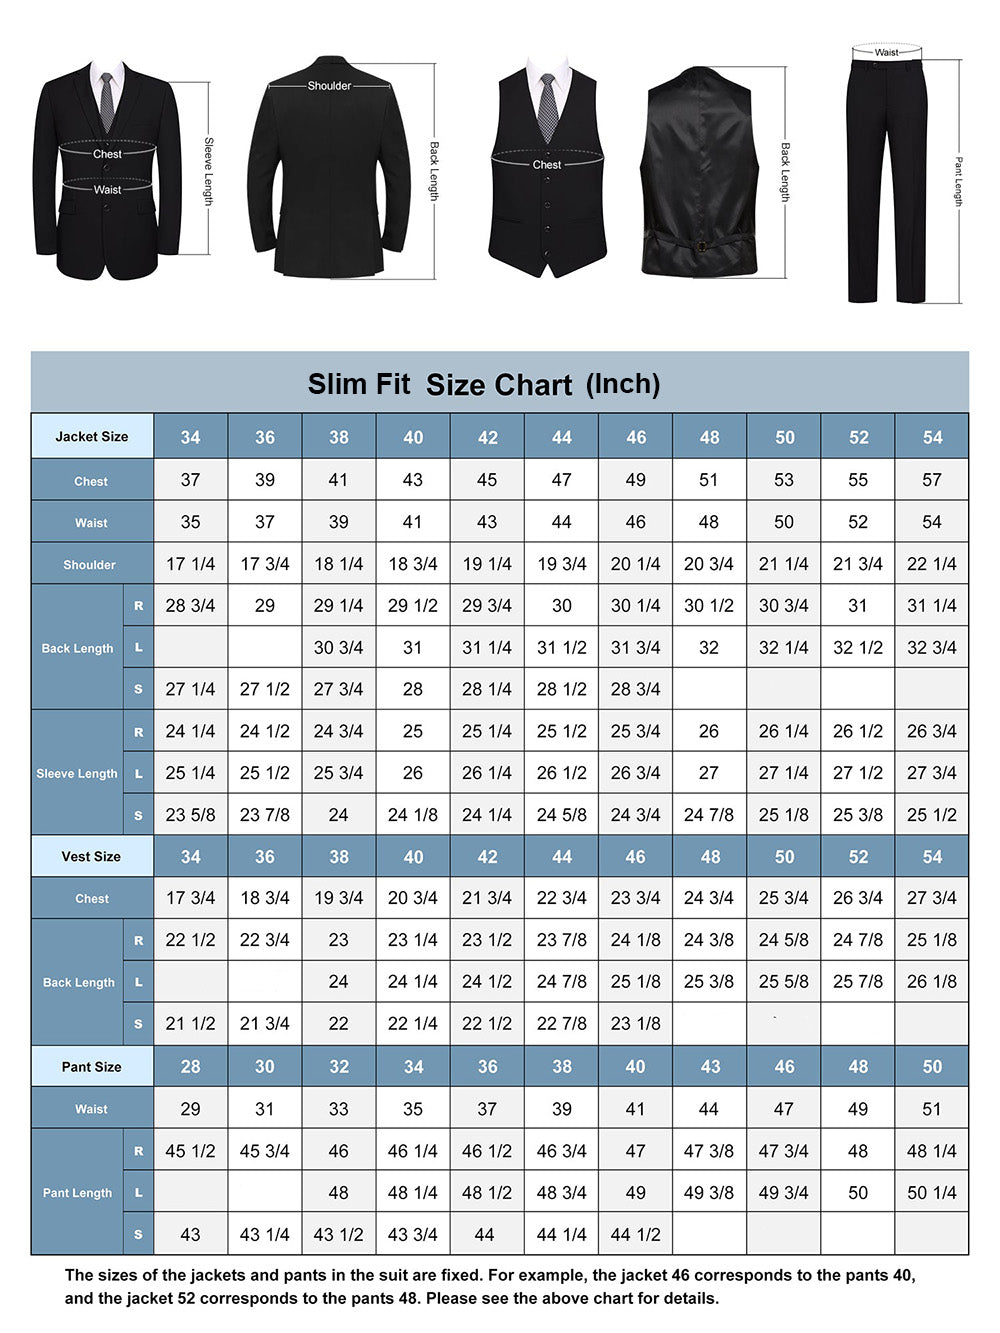 Men's Suit Fit Guide & Size Chart